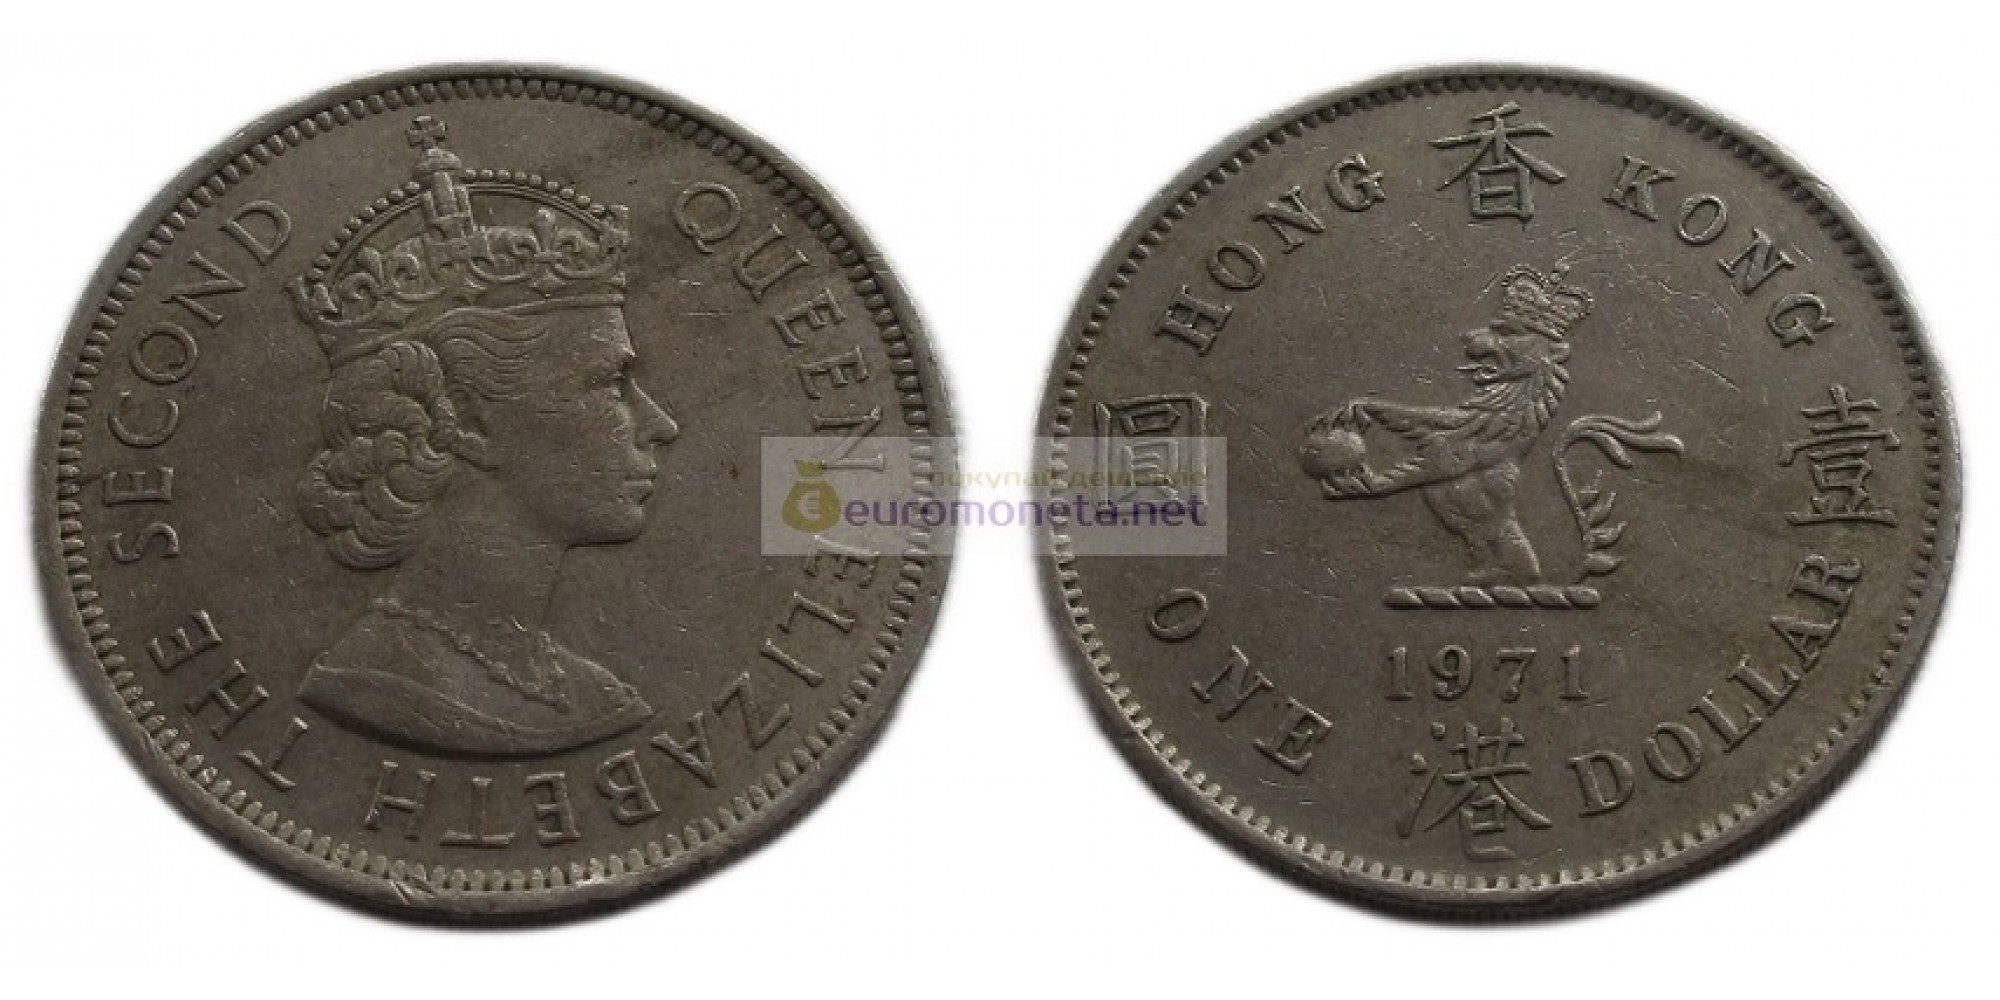 Гонконг 1 доллар 1971 год. Елизавета II